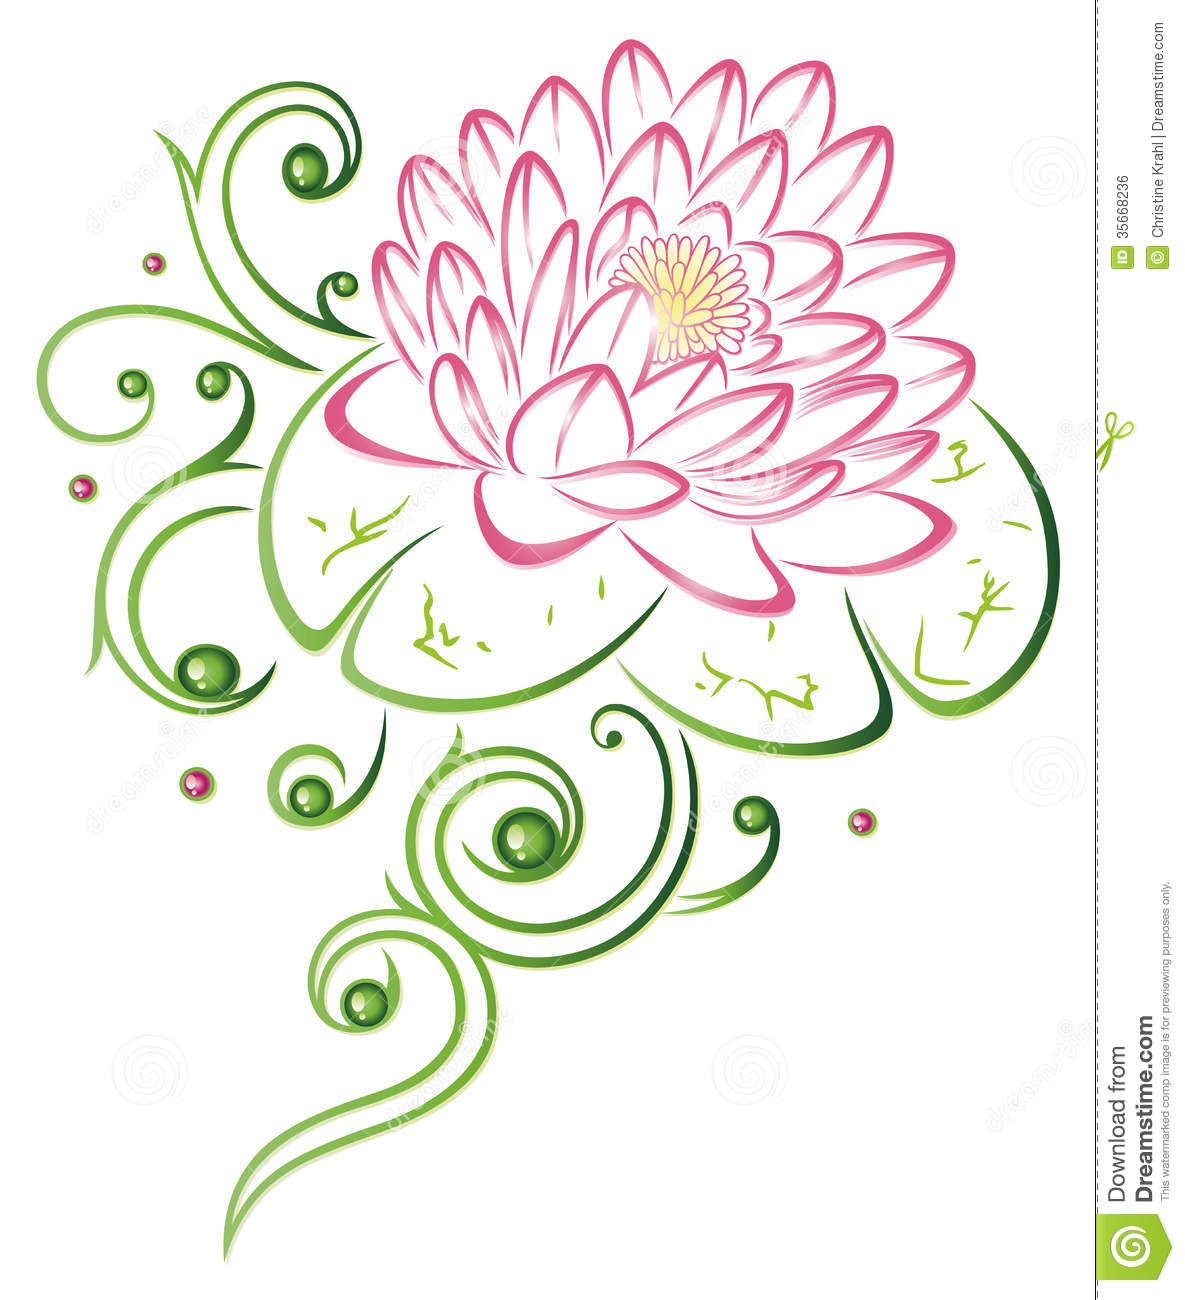 Lotus Flower Royalty Free Stock Image   Image  35668236